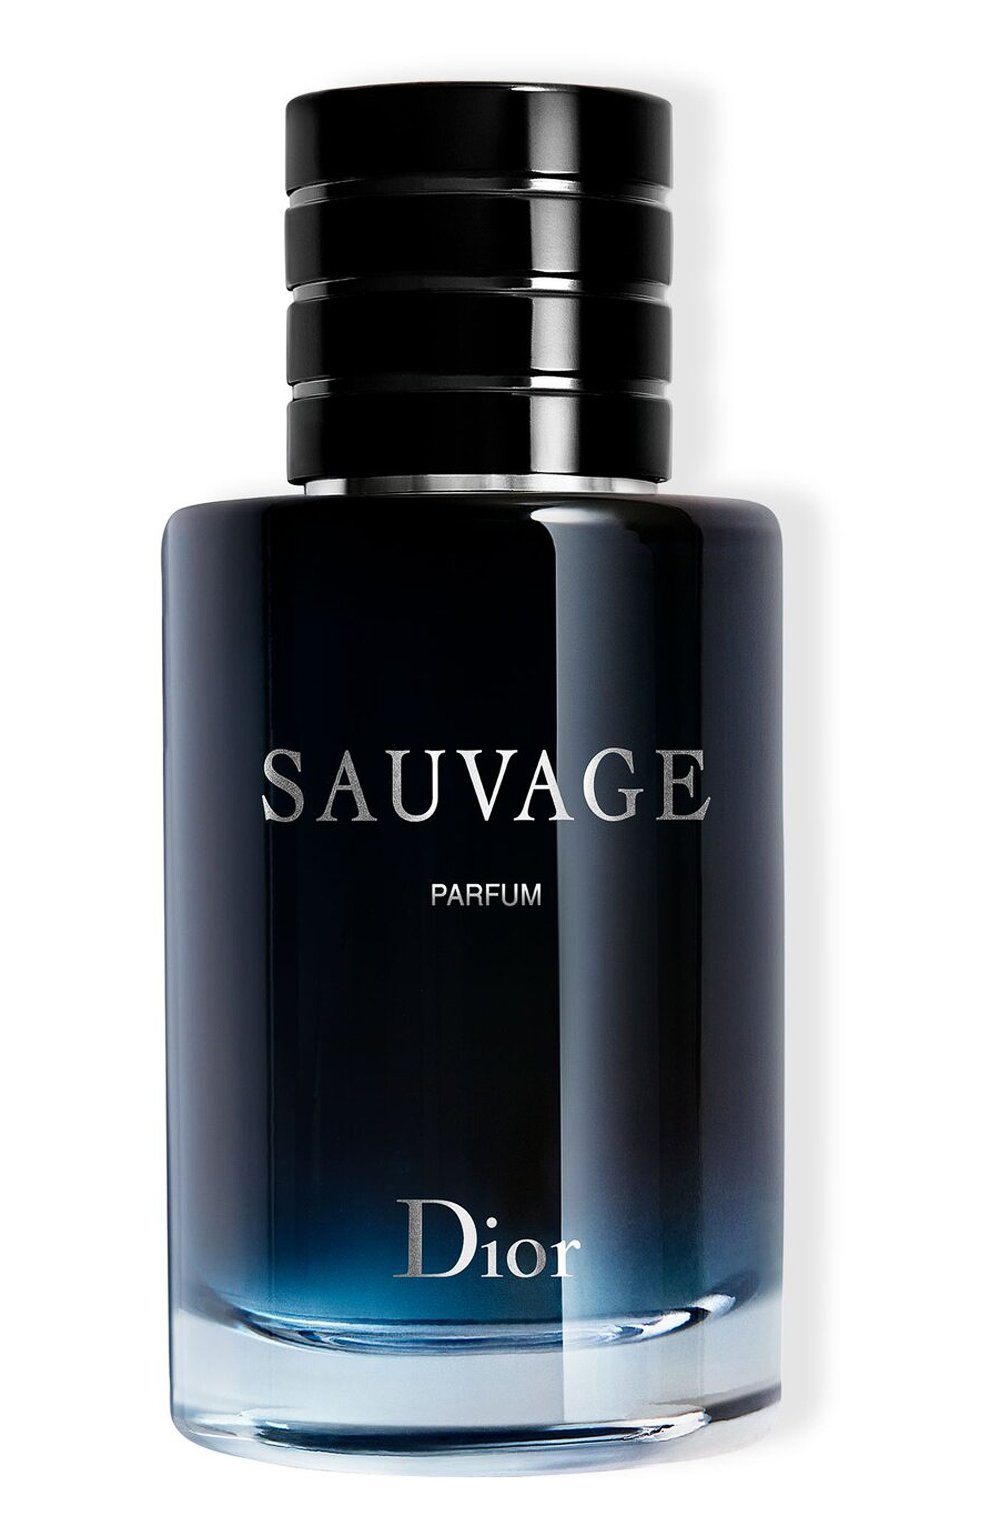 Мужская парфюмерия Dior купить парфюм Диор для мужчин в интернетмагазине  косметики РИВ ГОШ